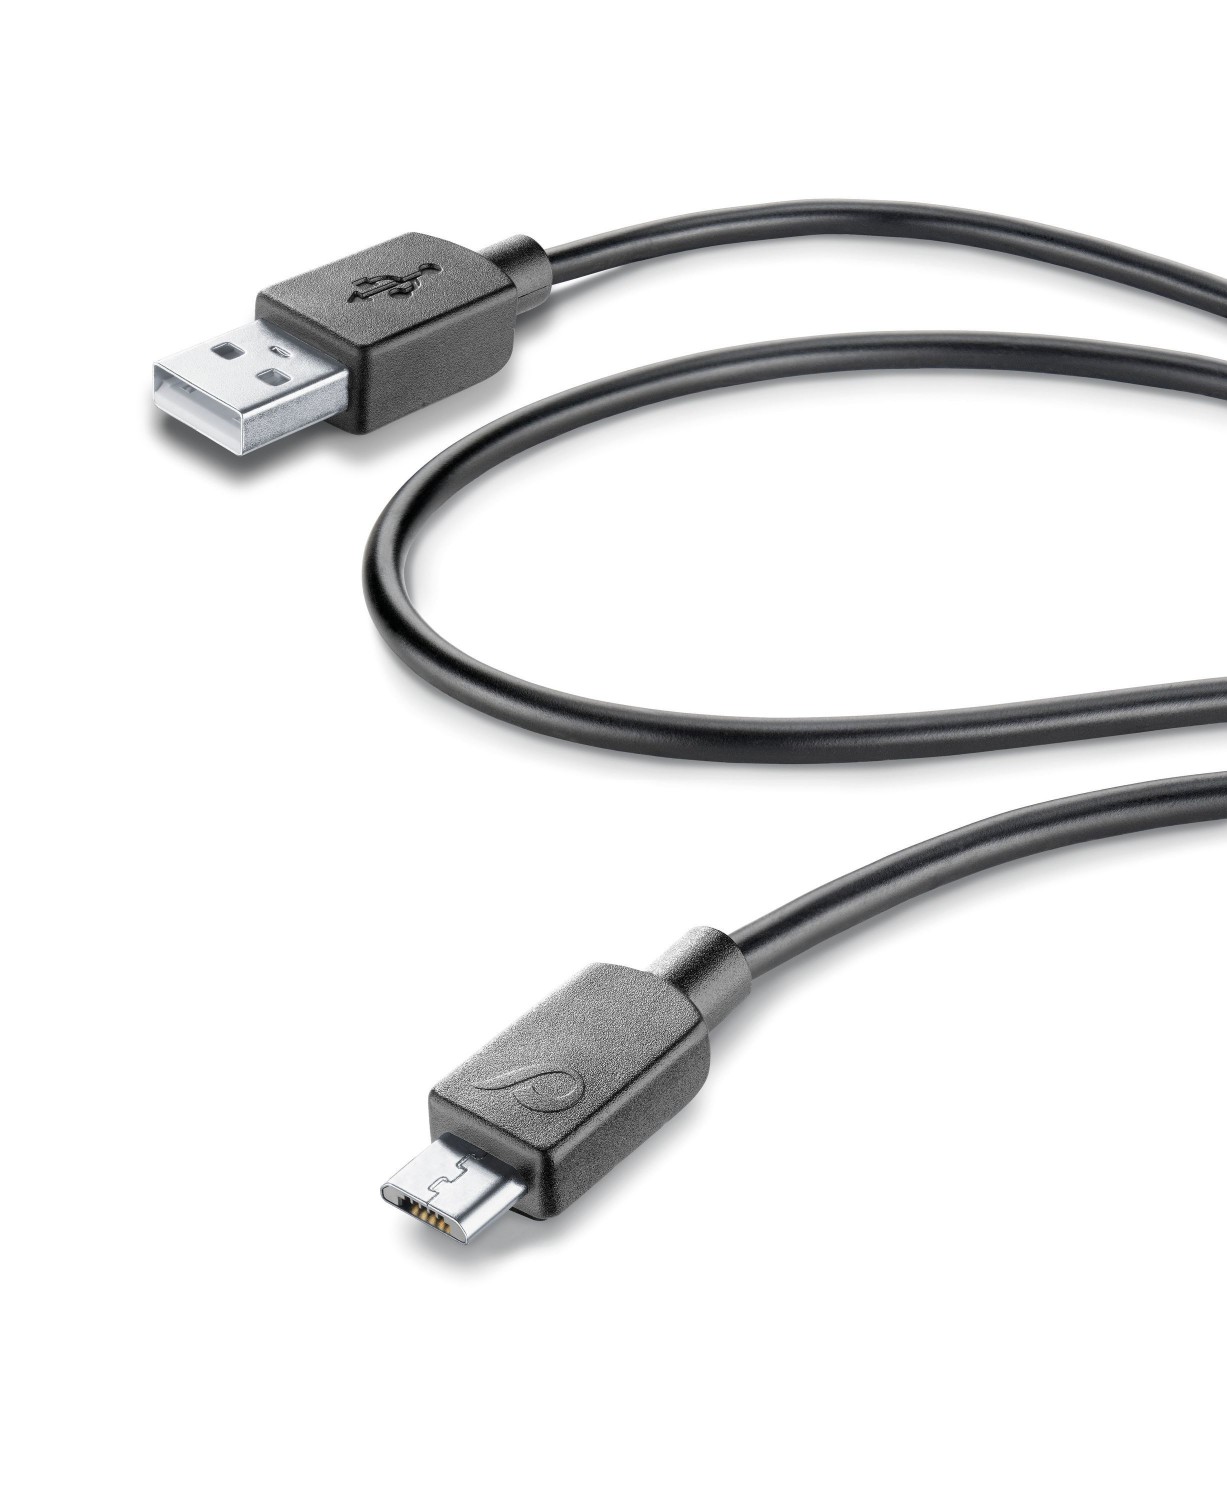 USB dátový kábel CellularLine s micro USB konektorom, 60 cm, čierny